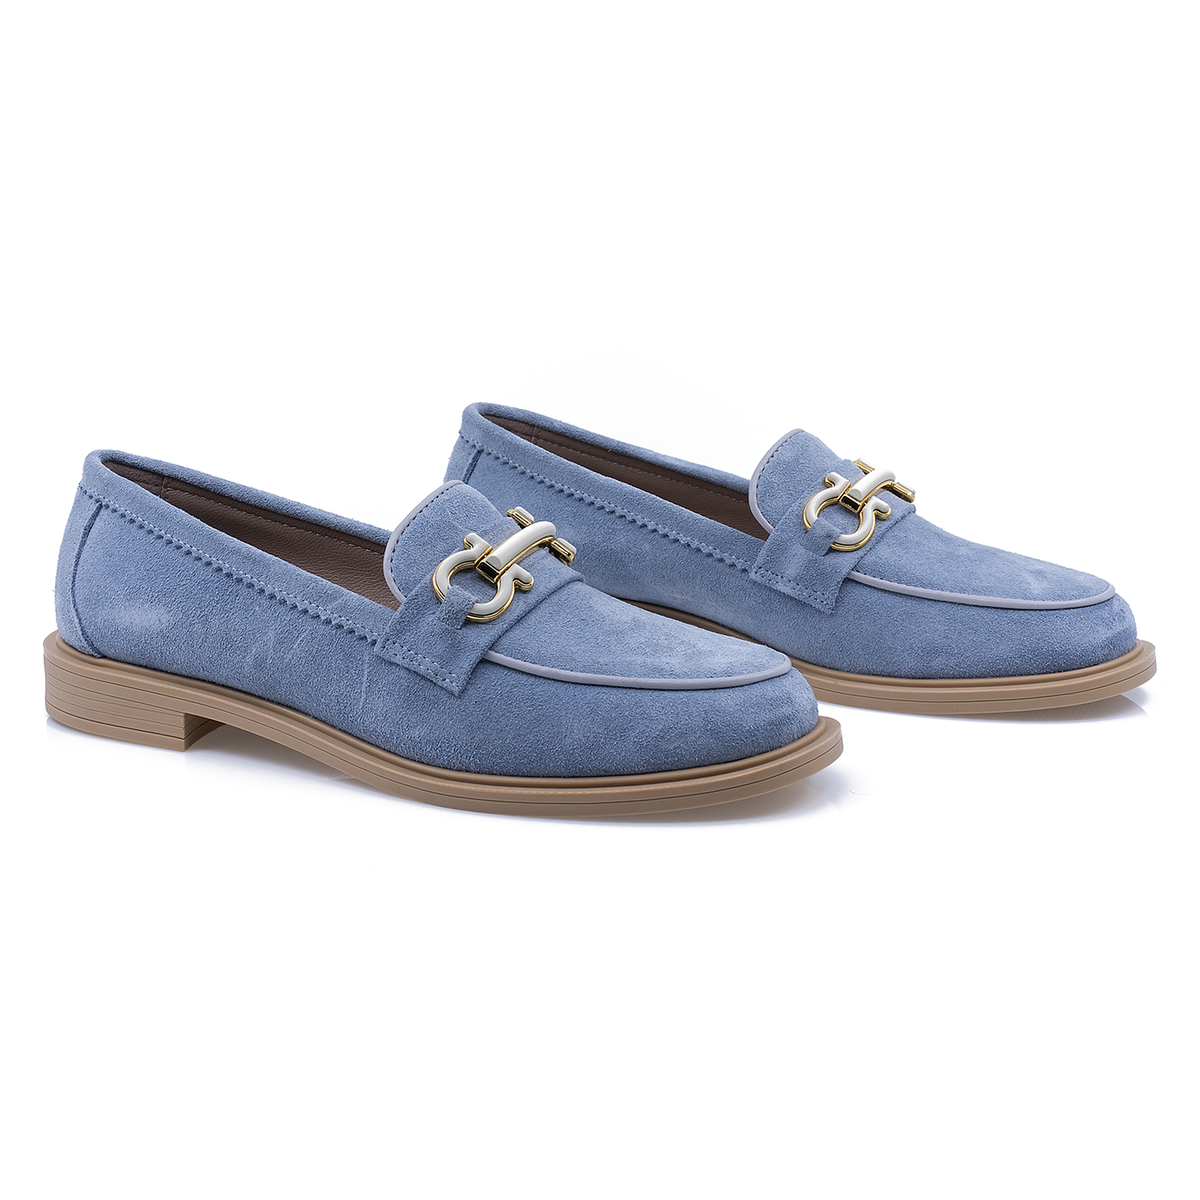 Pantofi-dama-Caspian-Cas-6007-casual-piele-intoarsa-albastru-nouamoda.ro